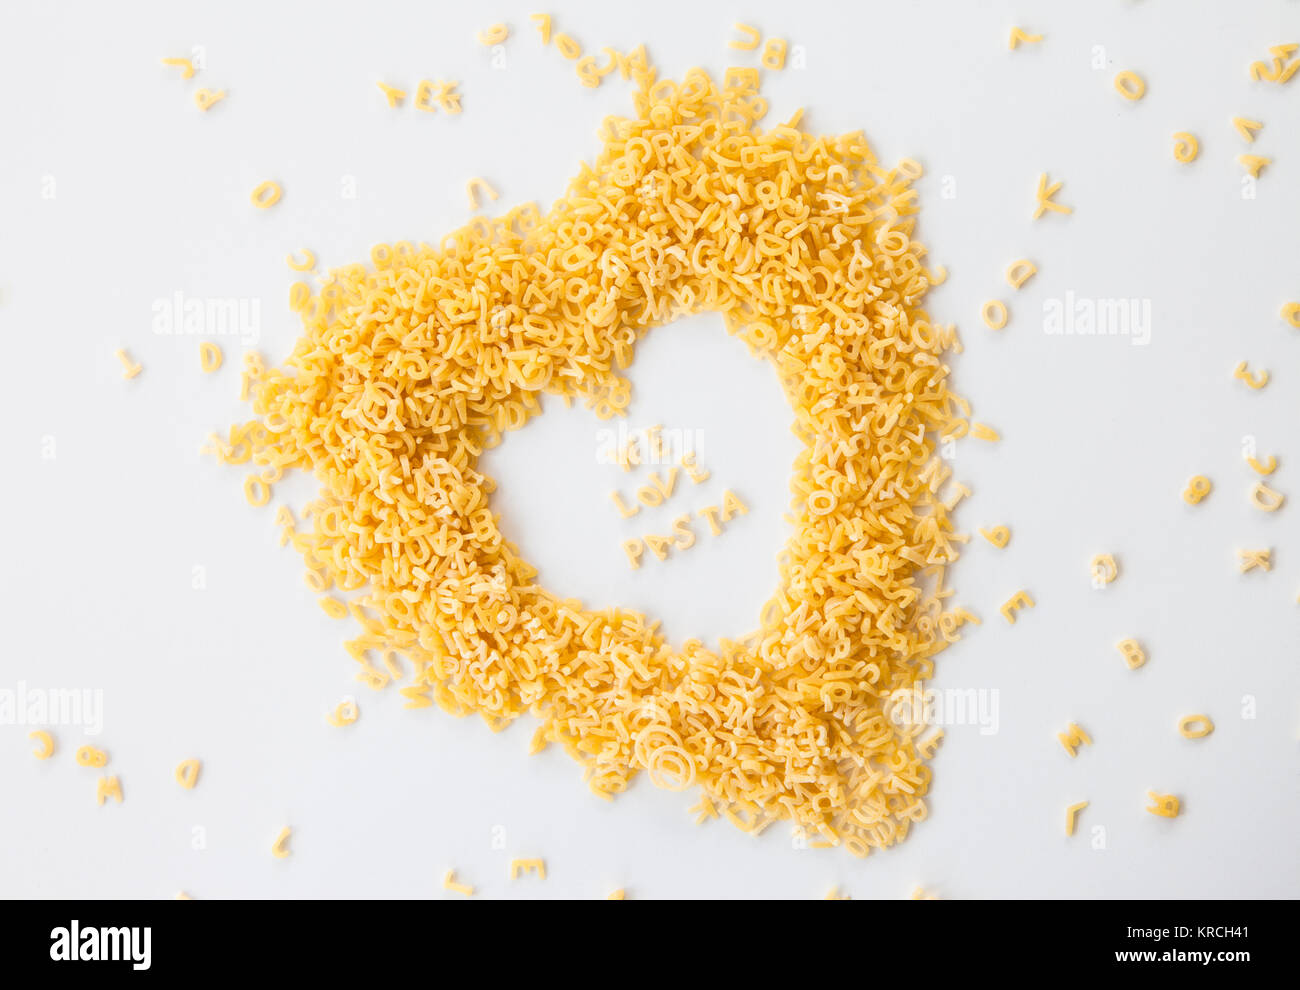 We love Pasta in Herzform mit Nudeln geschrieben Stock Photo